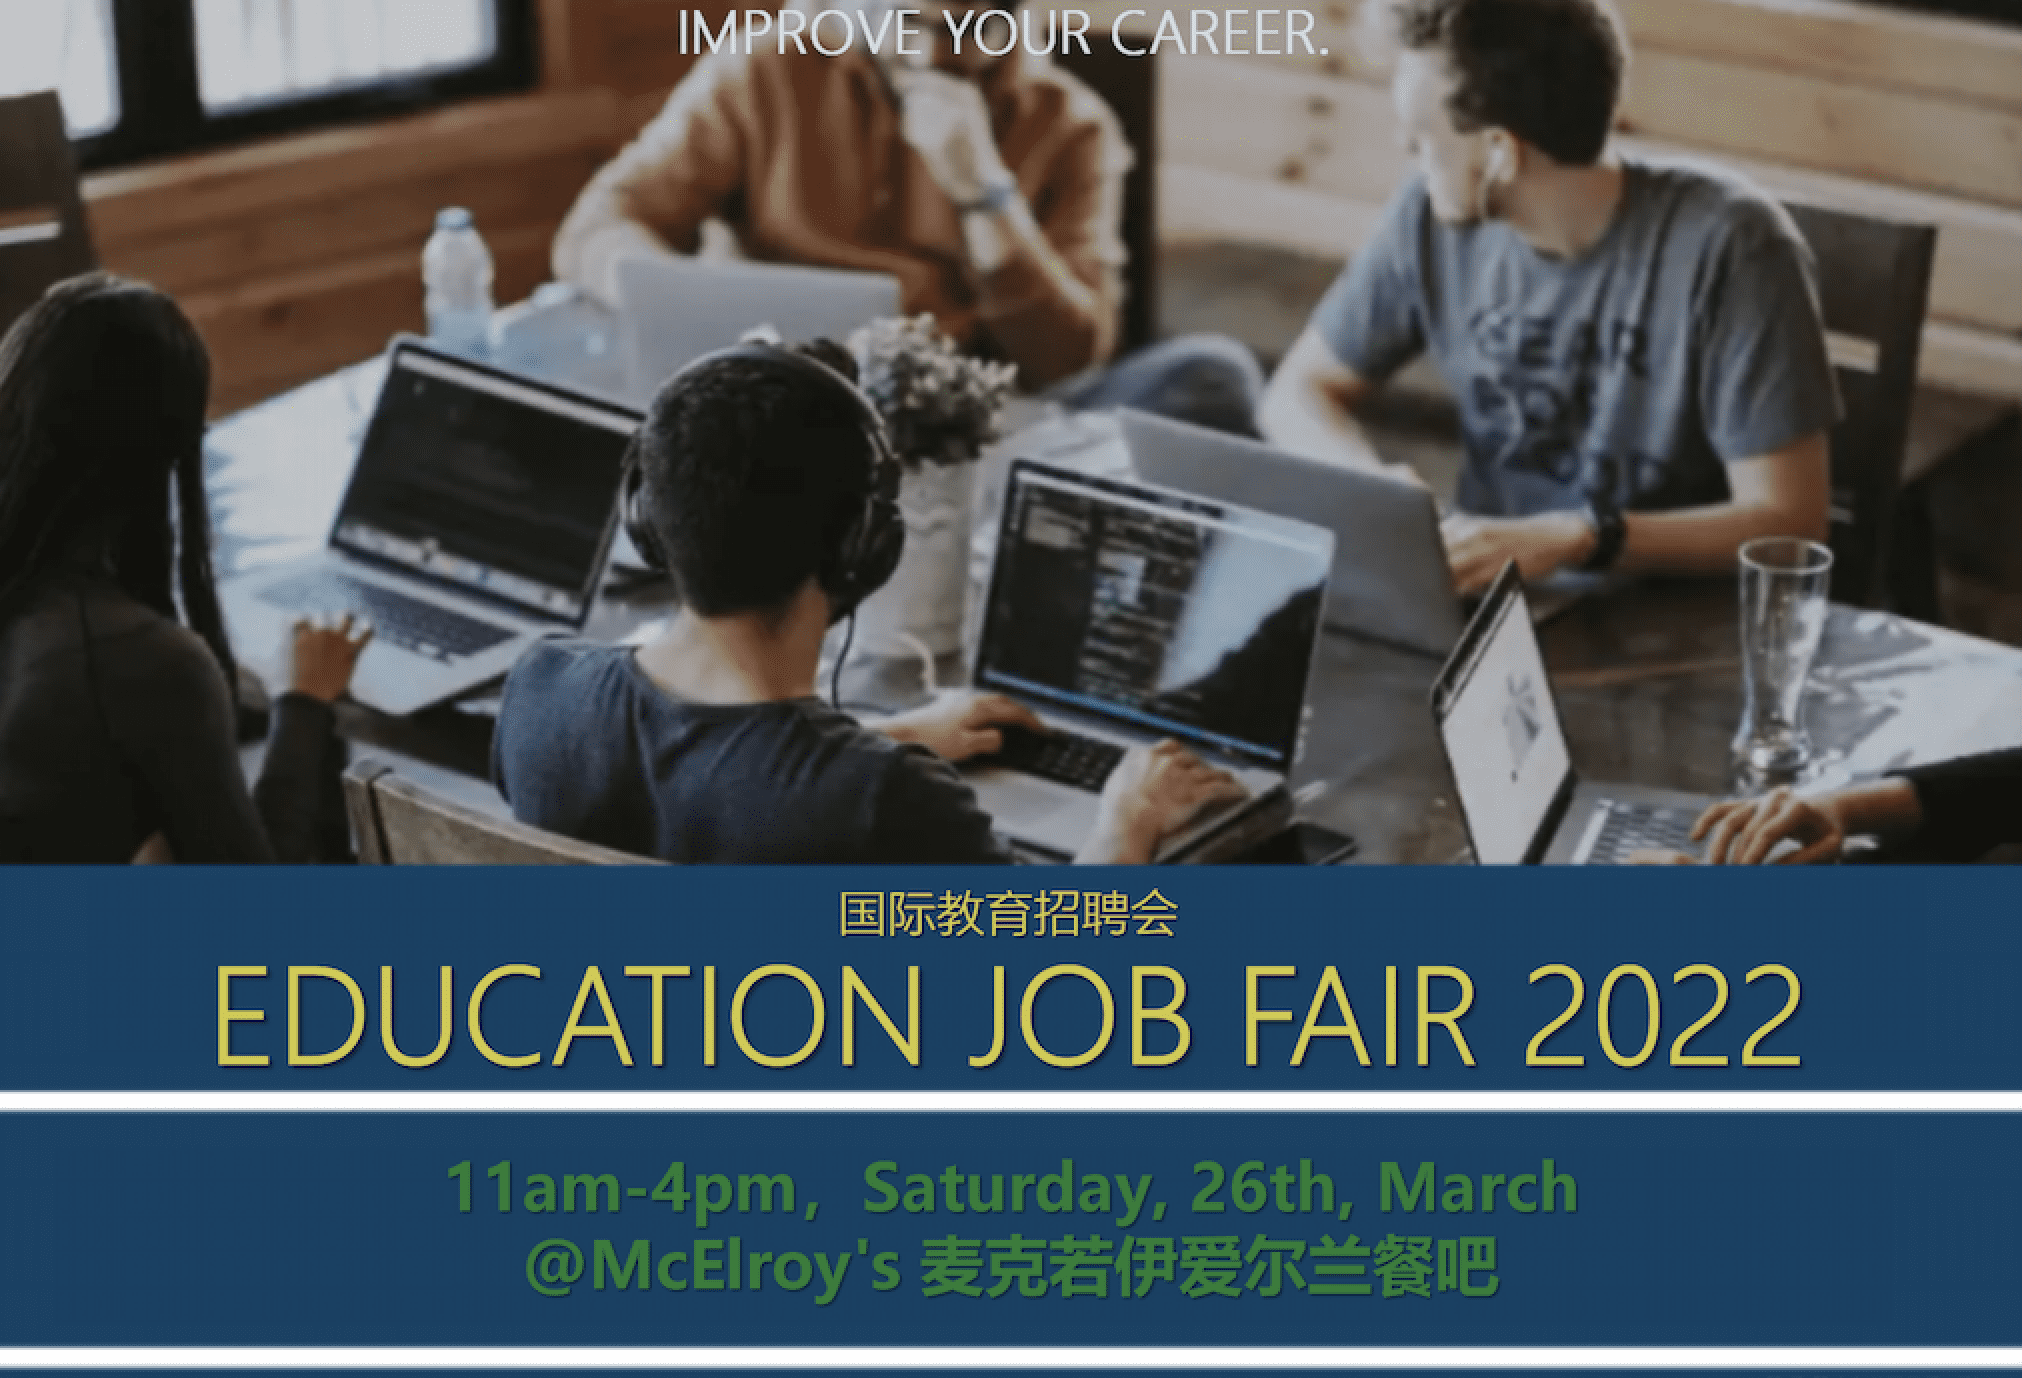 2022 Education Job Fair featured chengdu expat